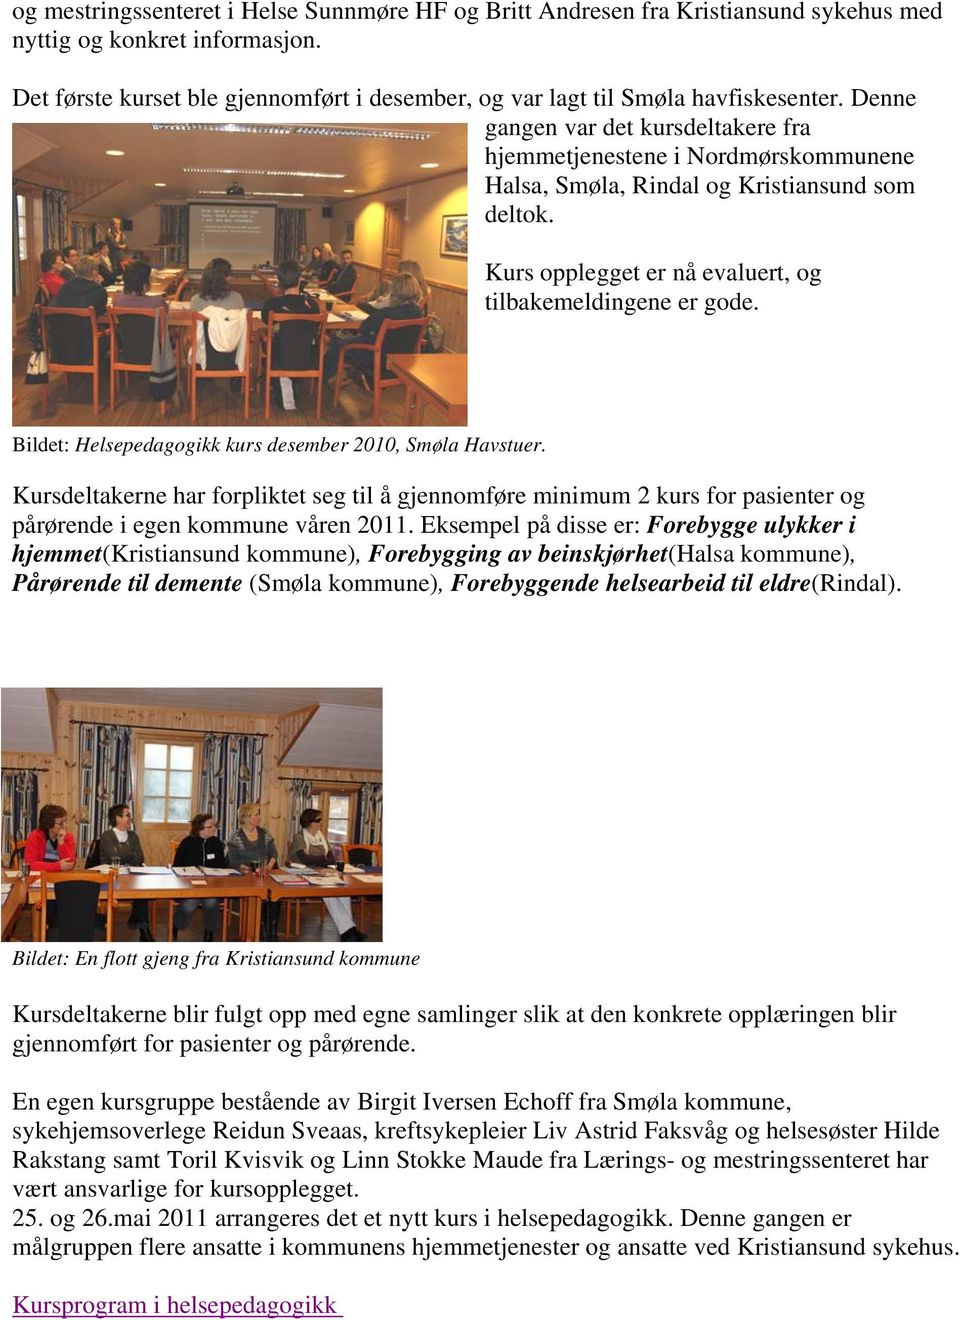 Denne gangen var det kursdeltakere fra hjemmetjenestene i Nordmørskommunene Halsa, Smøla, Rindal og Kristiansund som deltok. Kurs opplegget er nå evaluert, og tilbakemeldingene er gode.